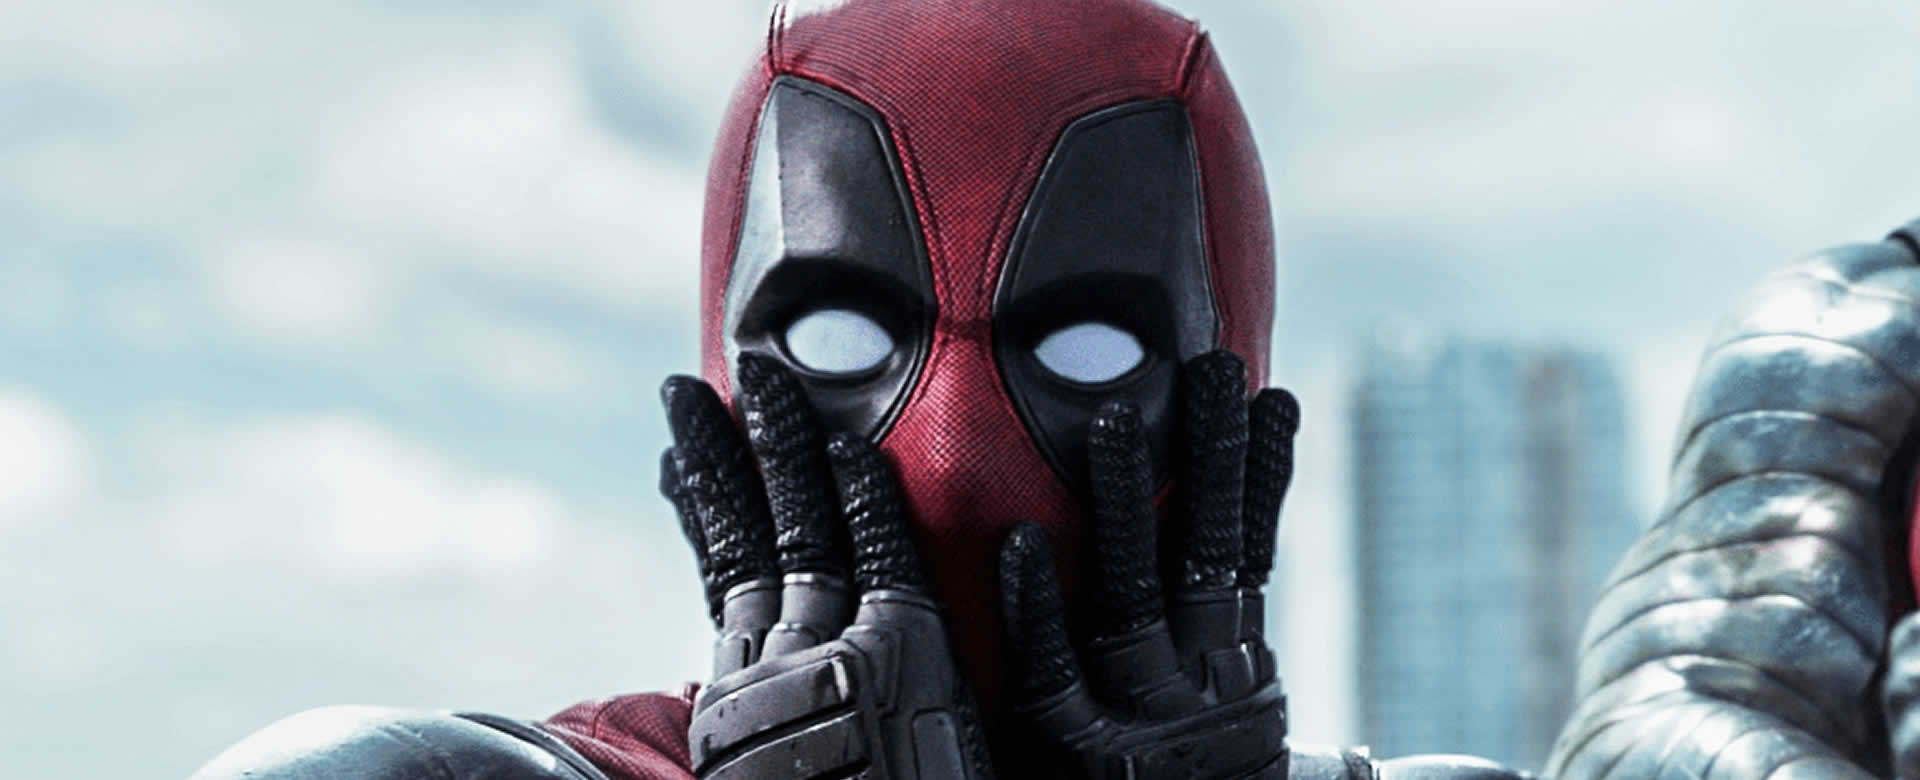 Ryan Ryan Reynolds, es el hombre 'libre' detrás de la máscara de Deadpool